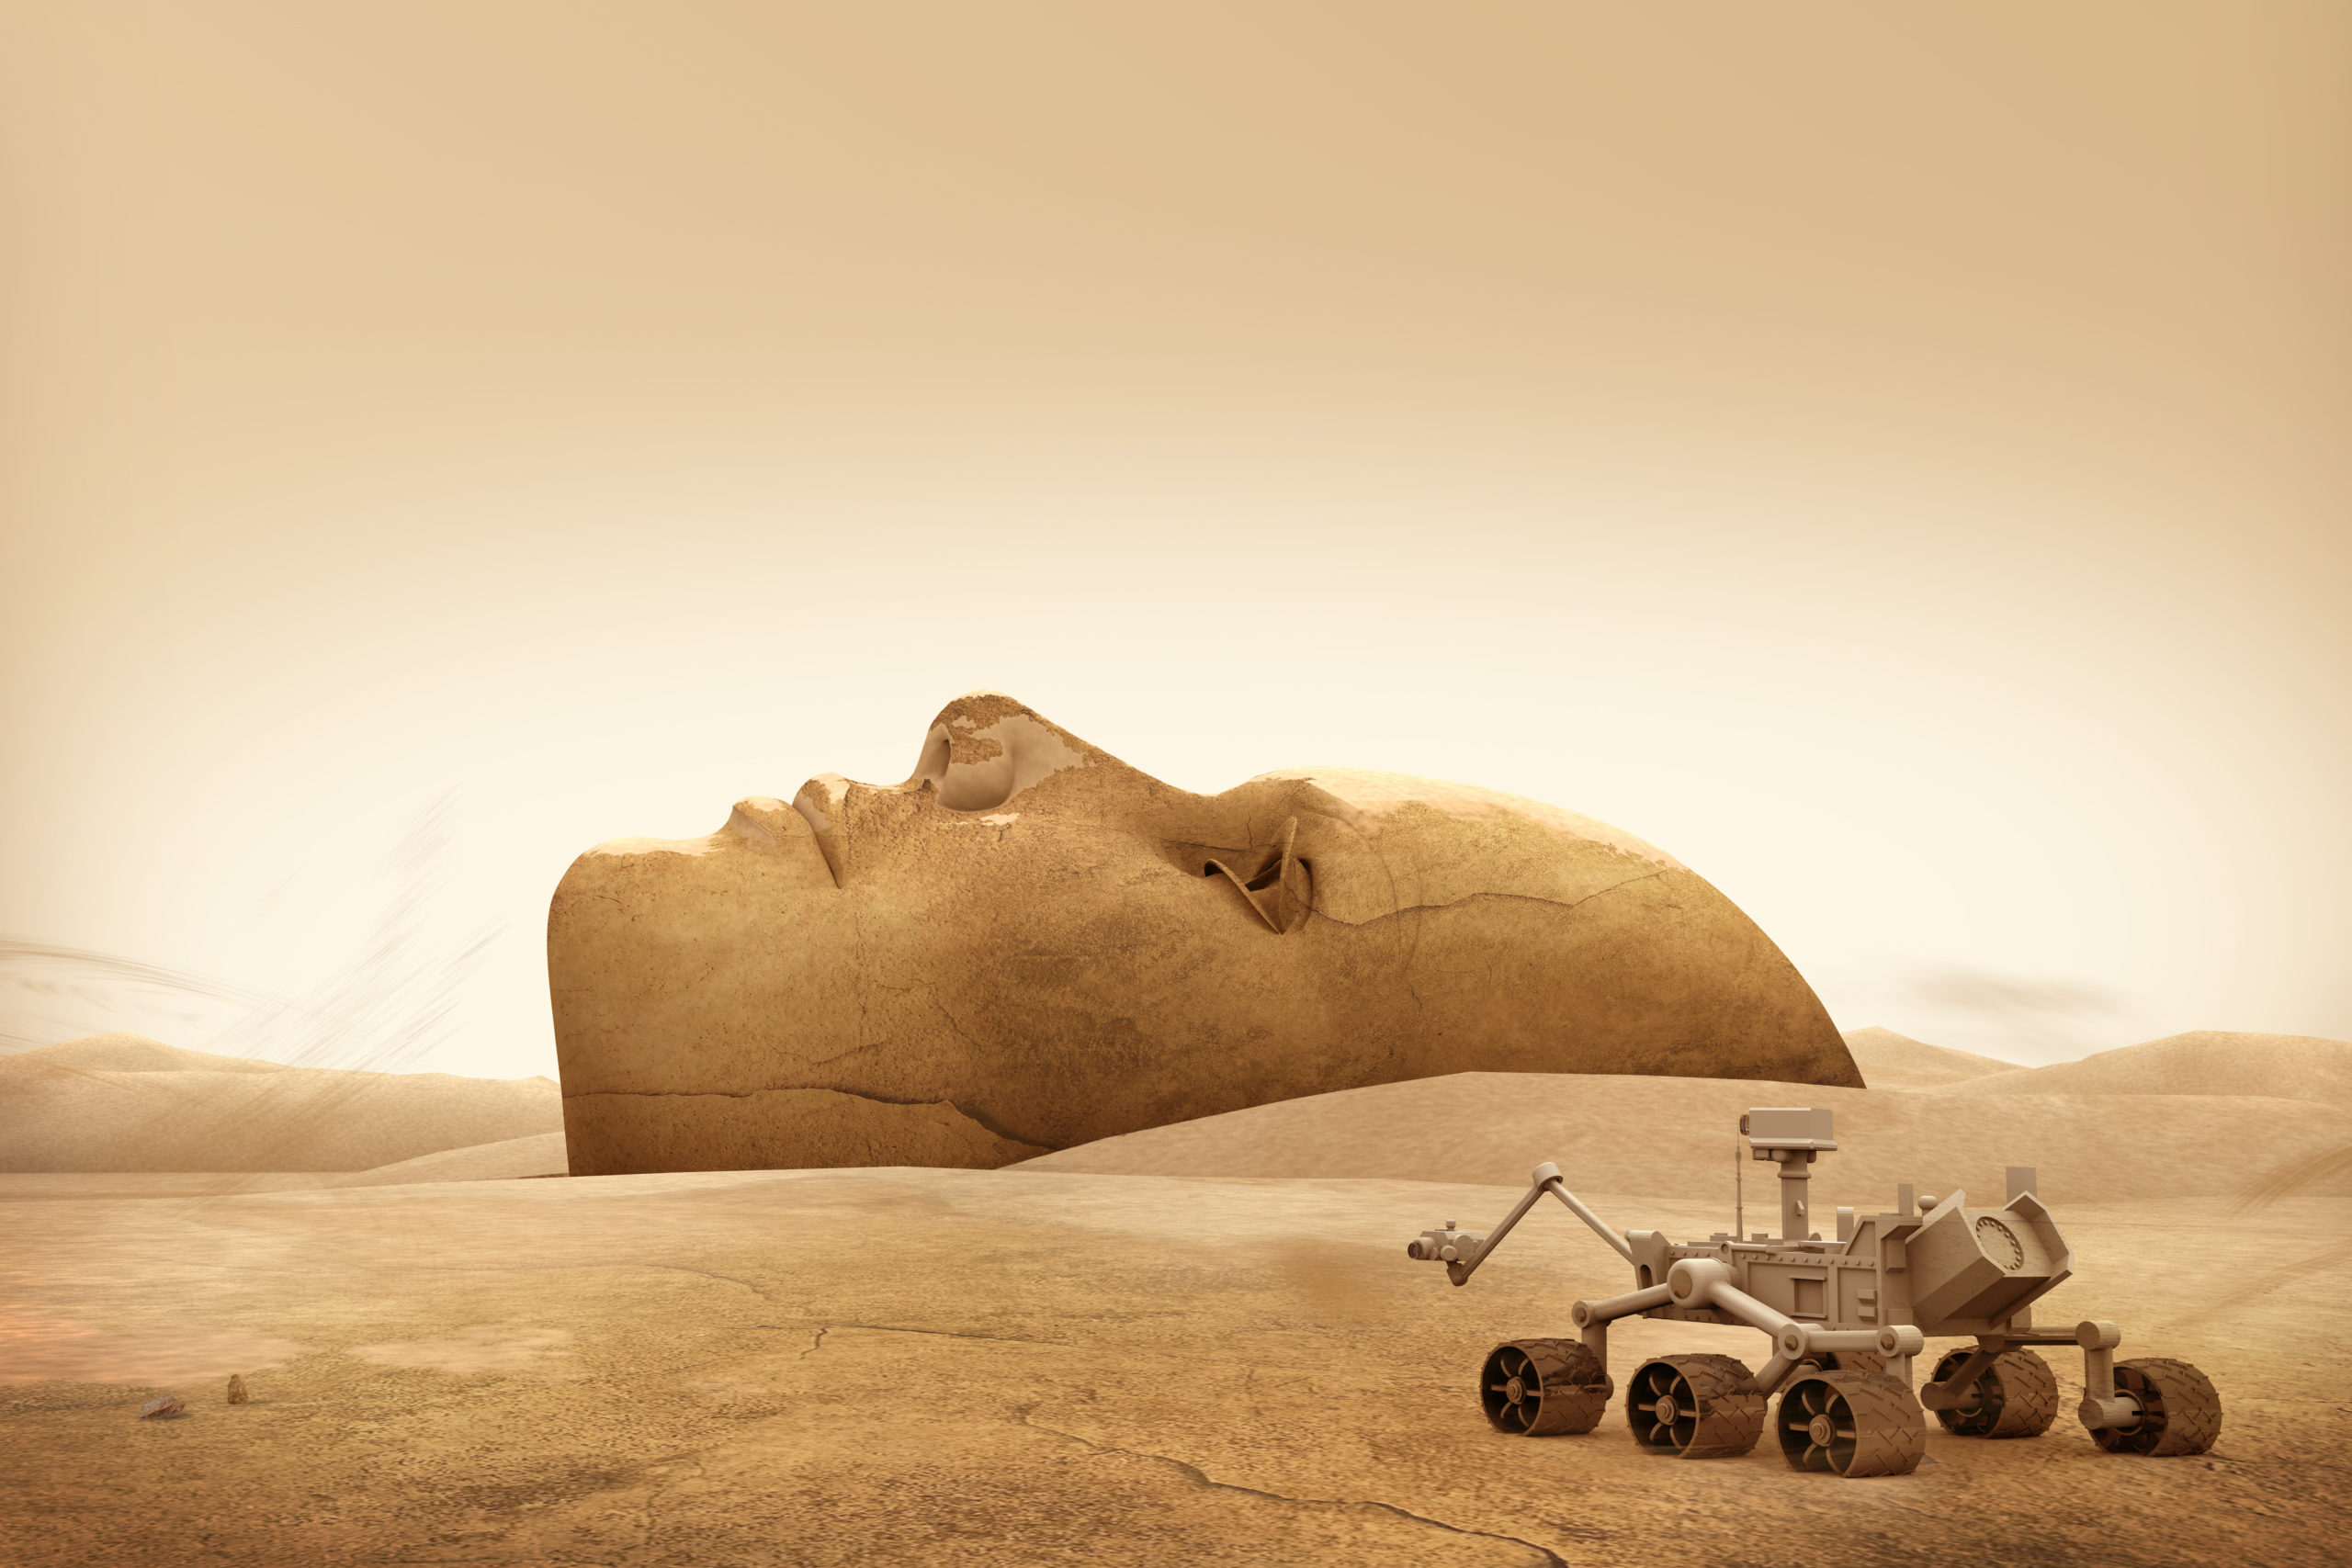 Arab Life on Mars